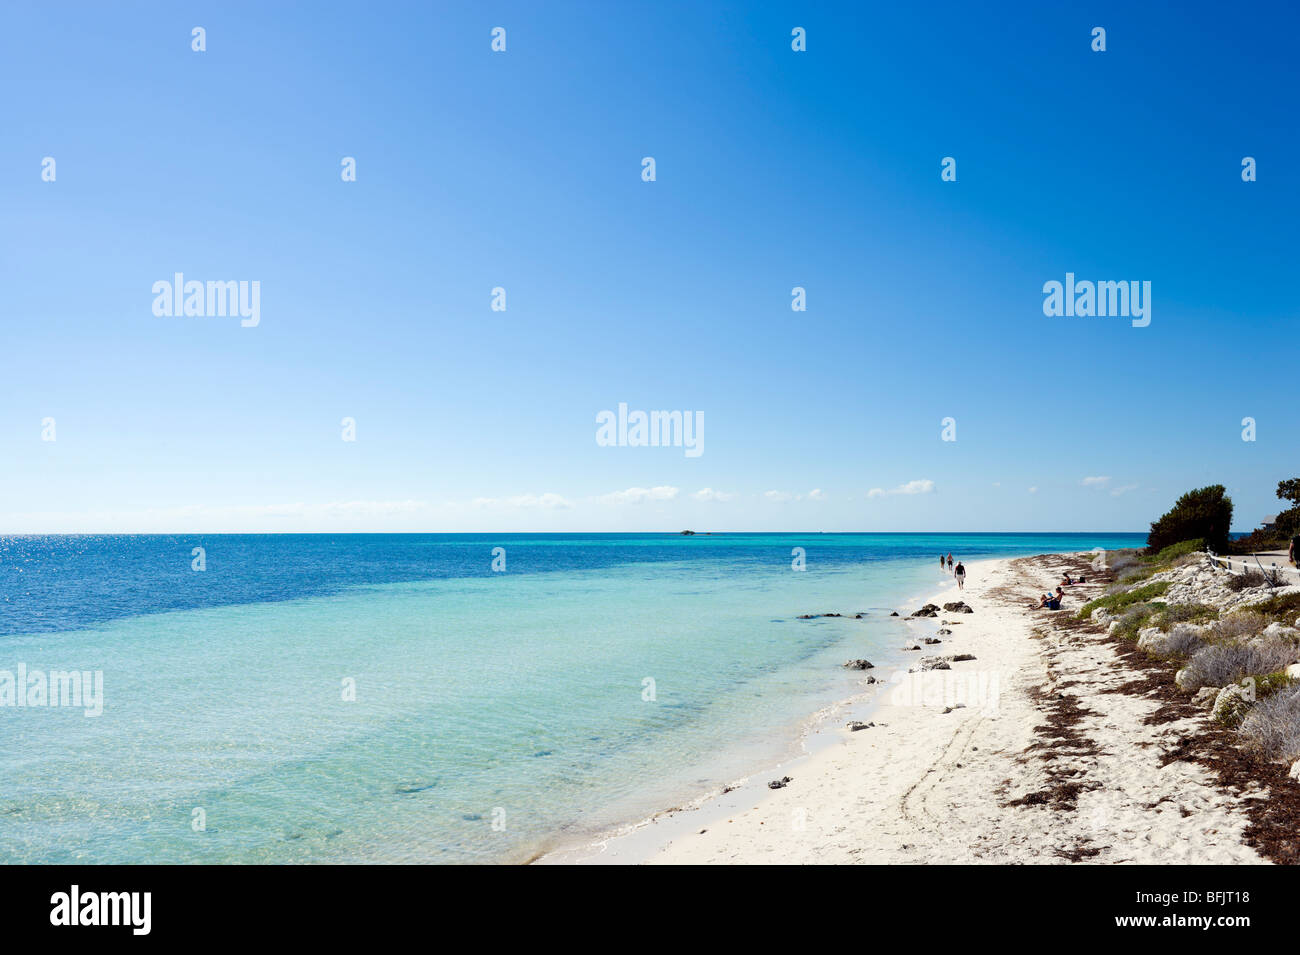 La caouanne Beach, une des plages de Bahia Honda State Park, Big Pine Key, Florida Keys, USA Banque D'Images